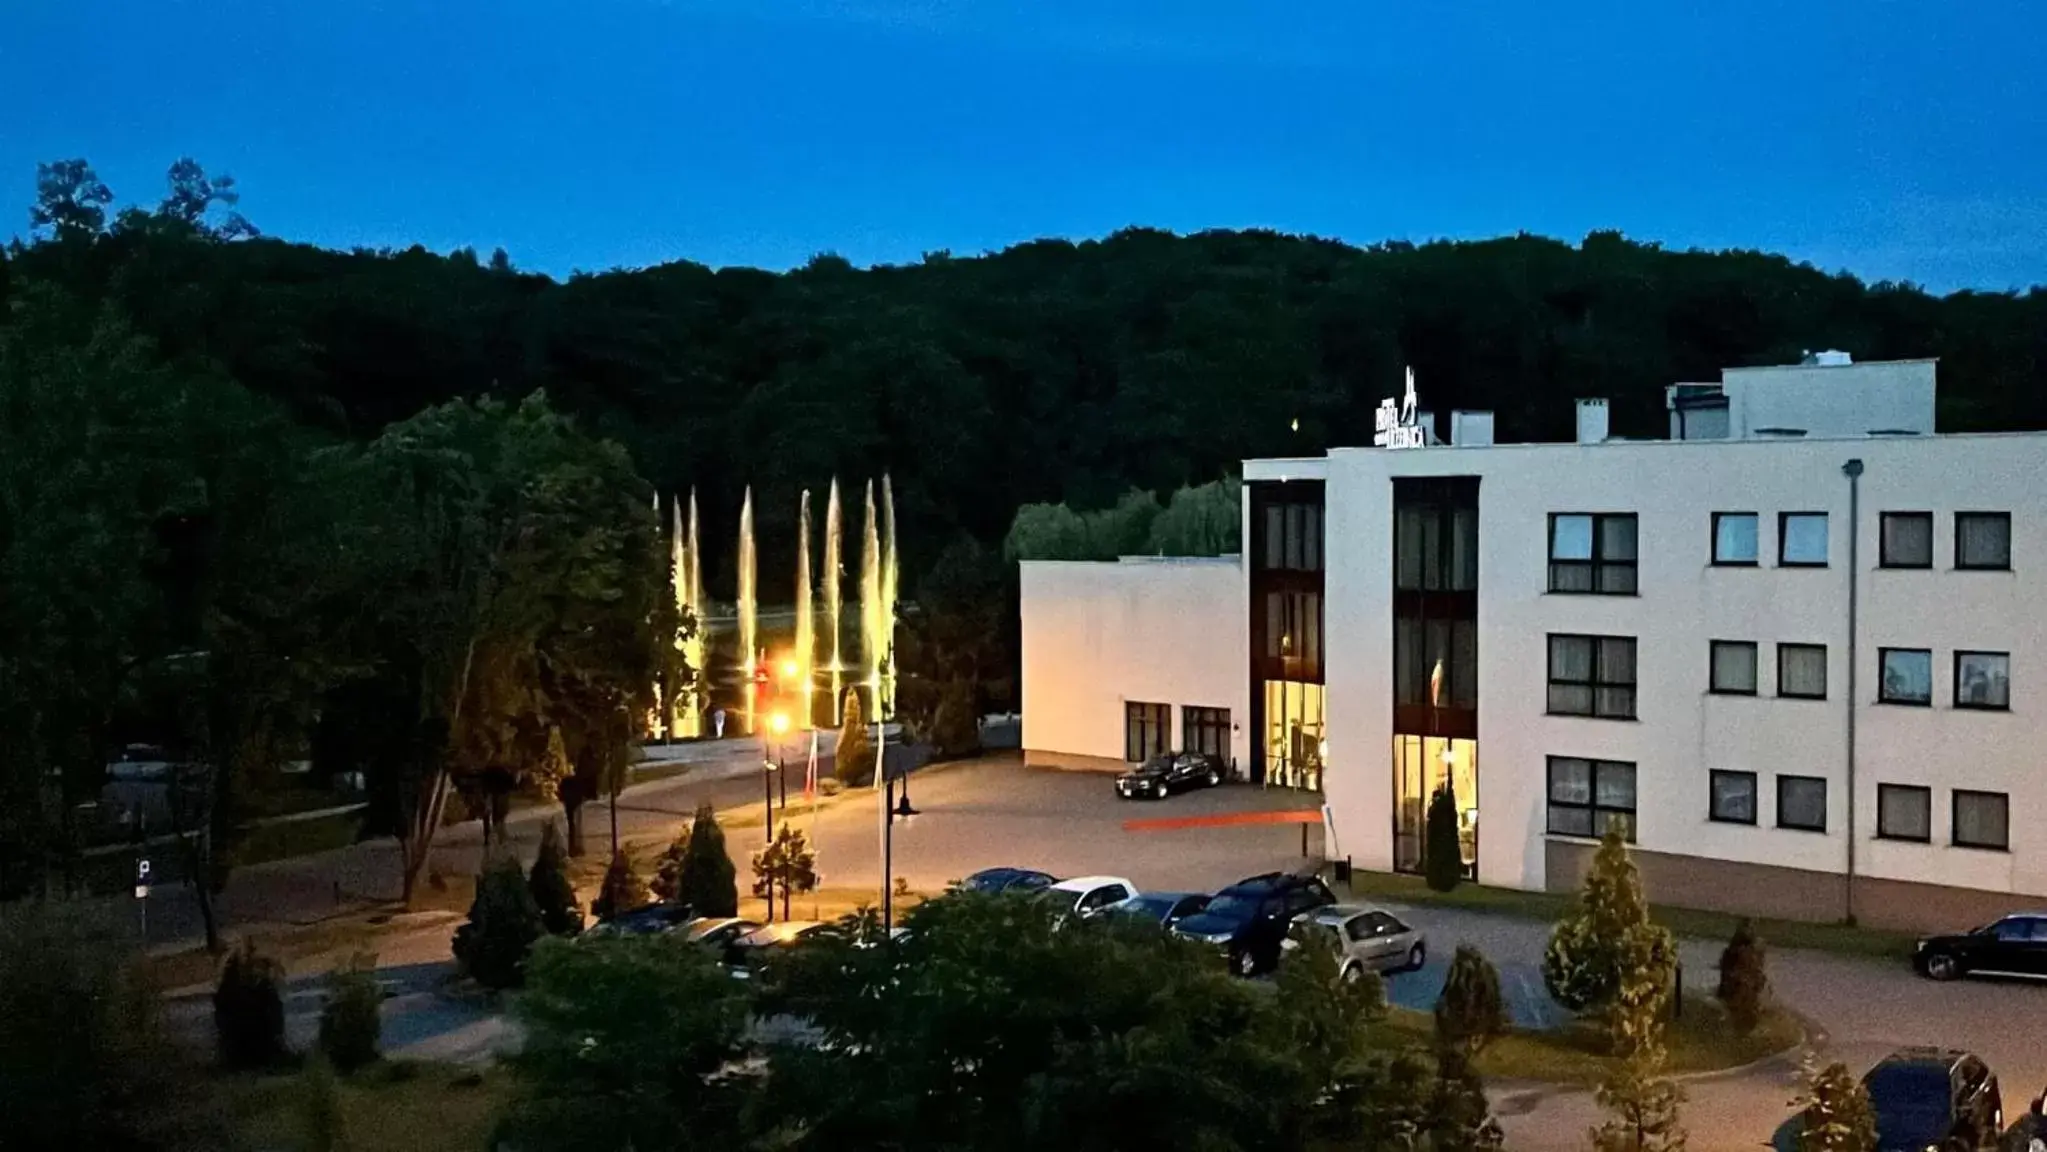 Off site in Hotel Trzebnica